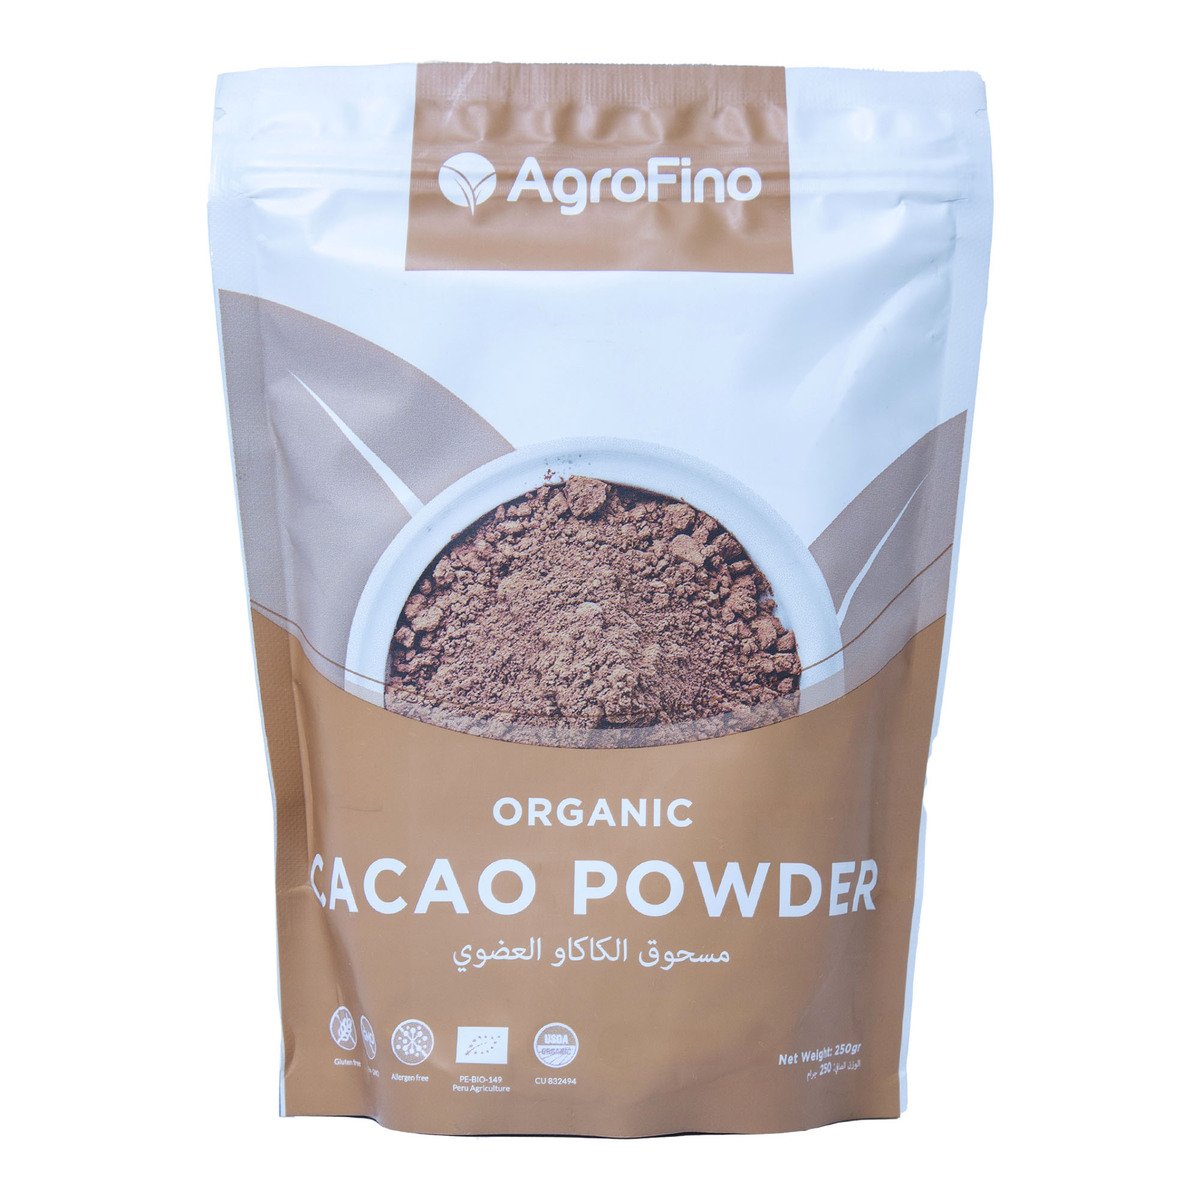 Agrofino Organic Cacao Powder 250 g Online at Best Price, Othr Baking  Aids&Mix